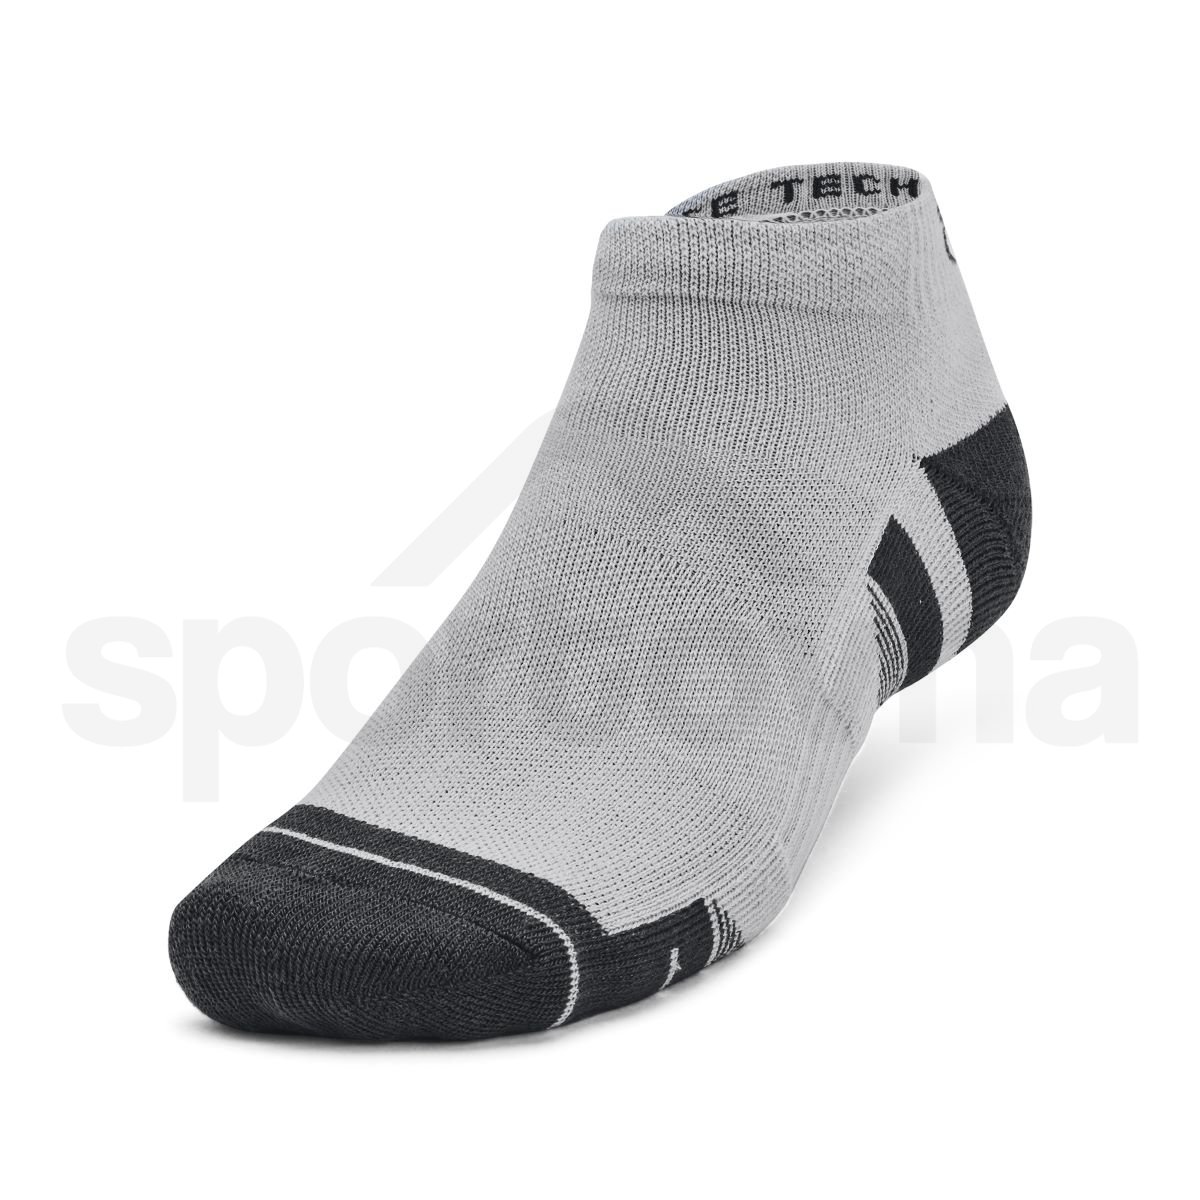 Ponožky Under Armour UA Performance Tech 3pk Low - šedá/bílá/černá